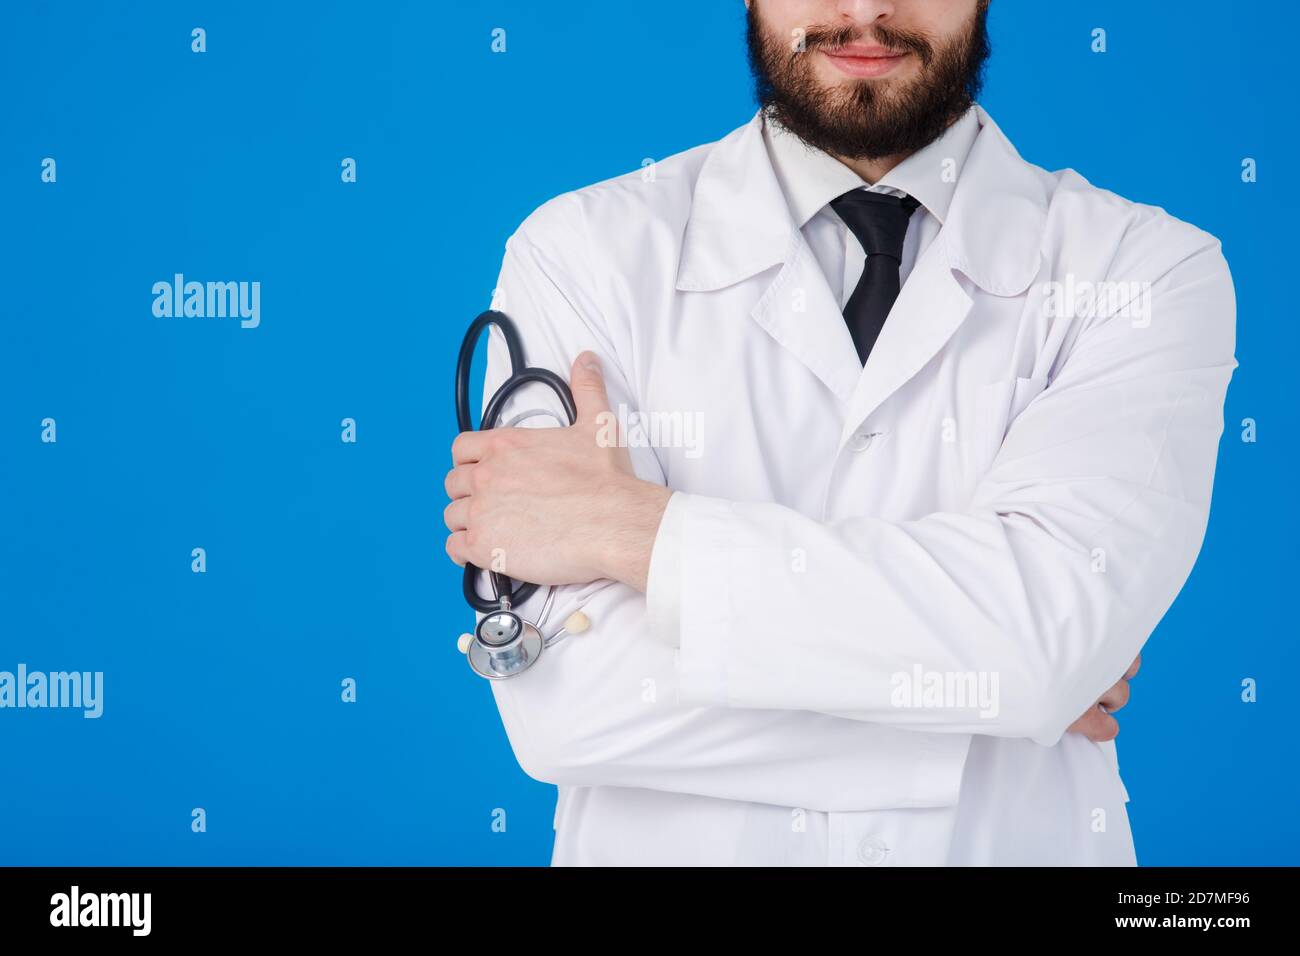 Arzt Arzt Arzt Klinik Medizin Kardiologe Patient Gesundheit Hintergrund Konzept schließen Nach oben Stockfoto